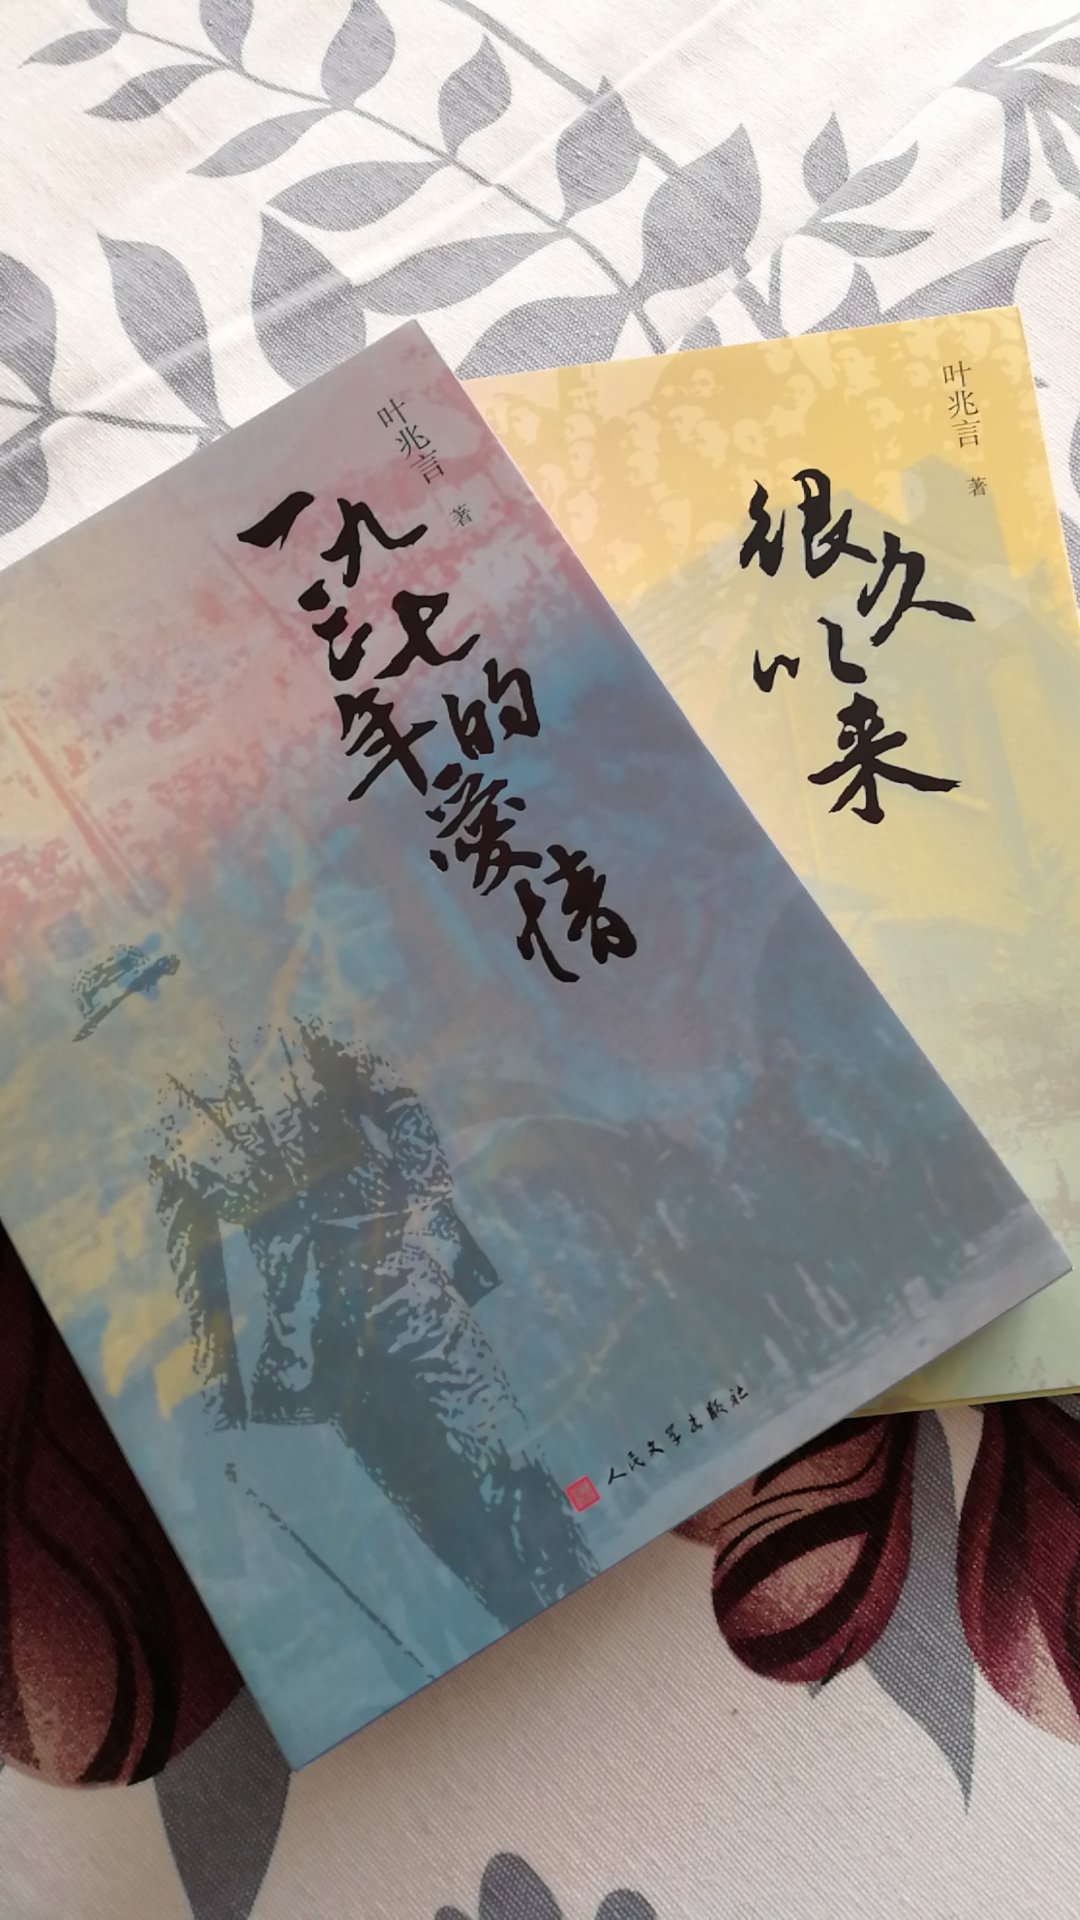 叶兆言的三部曲终于都收齐了，非常优秀的三部作品，看一看秦淮河畔的风土人情。